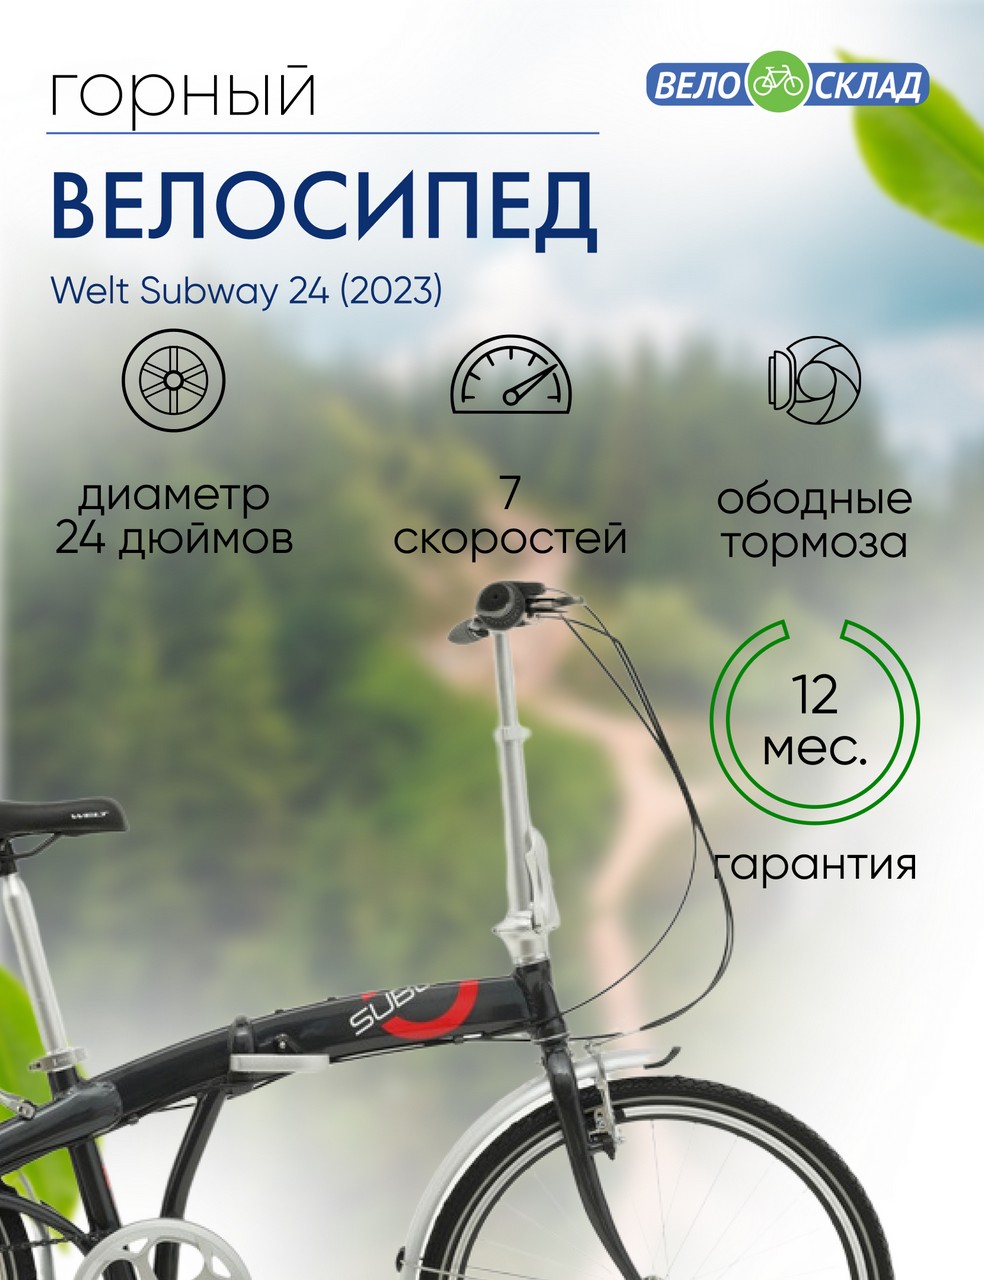 Складной велосипед Welt Subway 24, год 2023, цвет Серебристый, ростовка 16